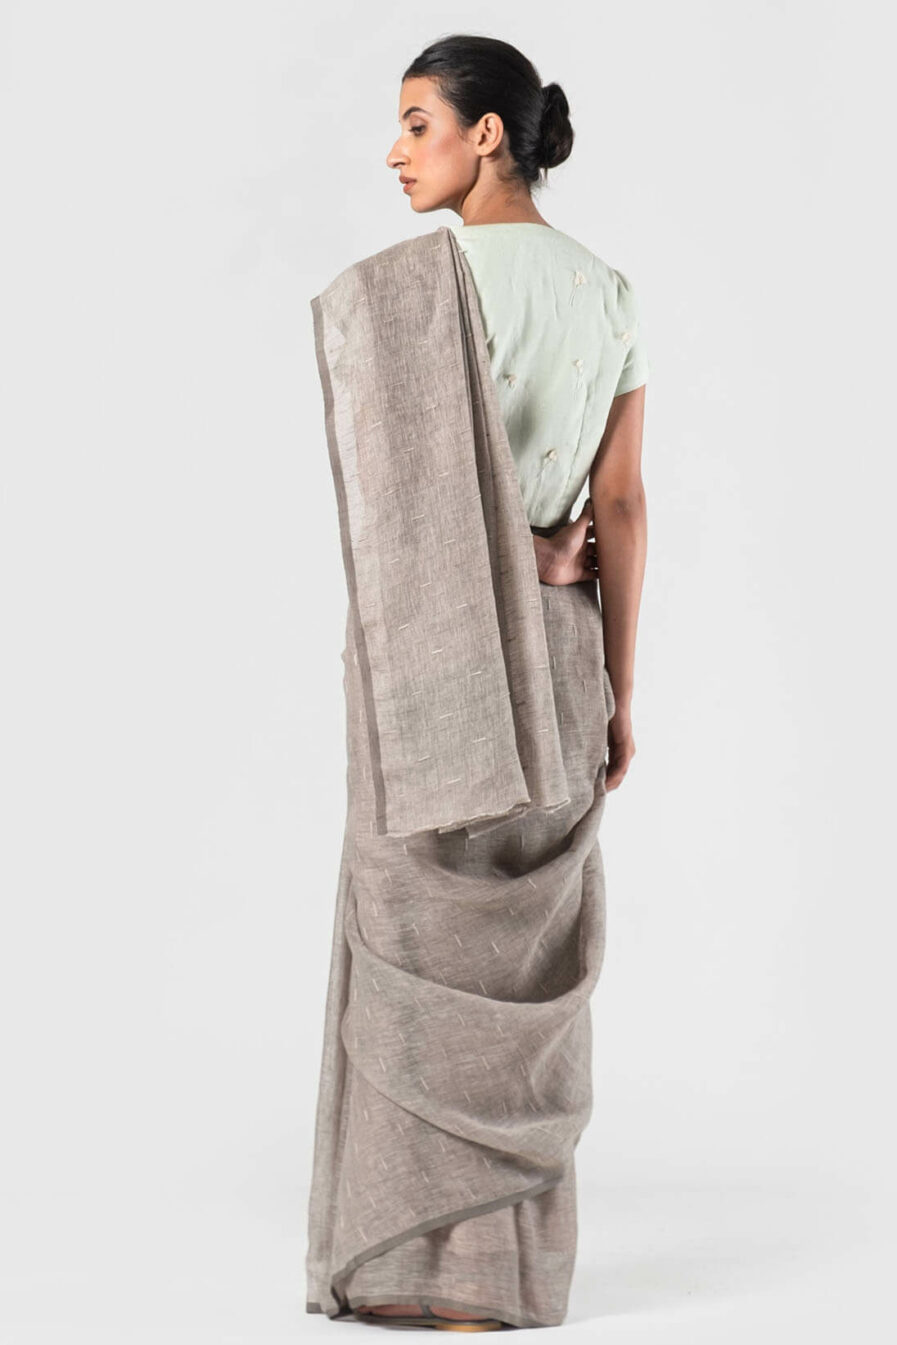 Anavila Grey Linen slub detail sari